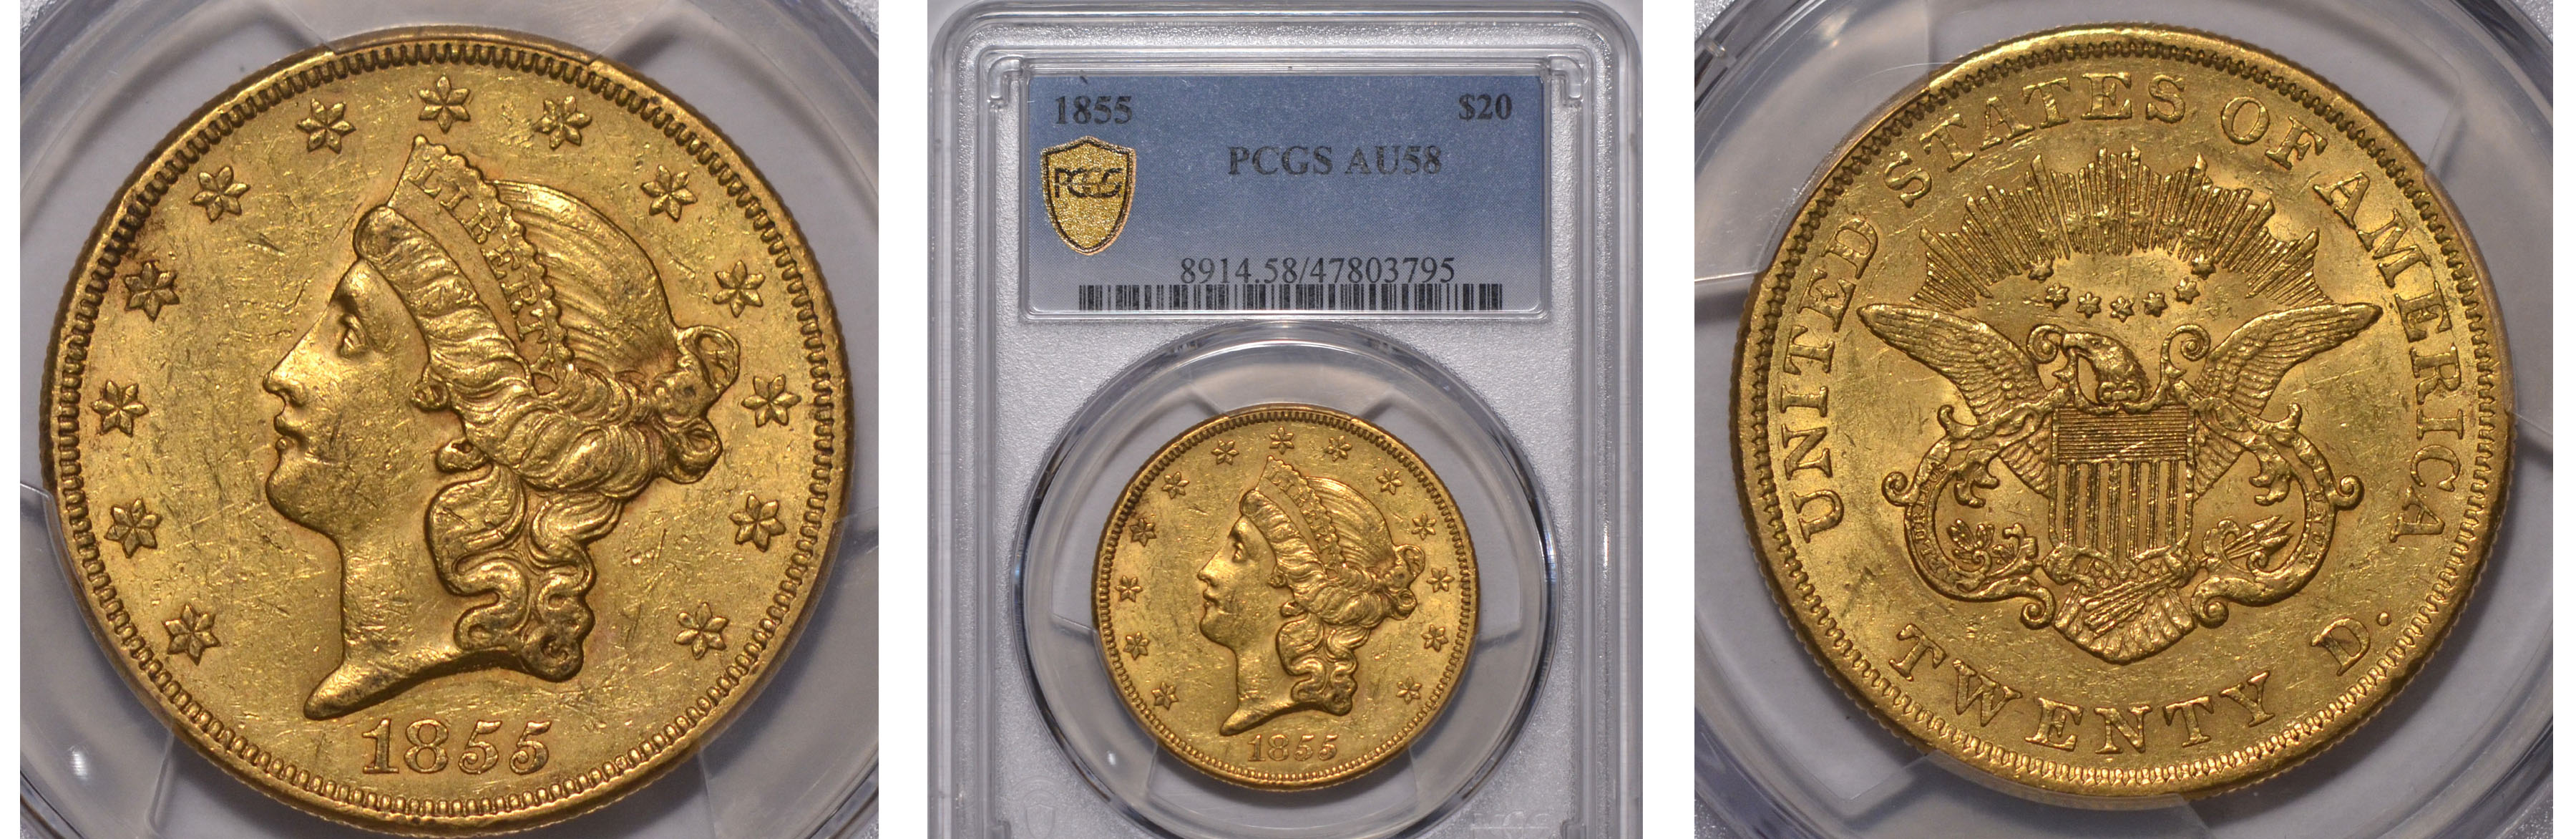 1855 Gold $20 Double Eagle PCGS AU58